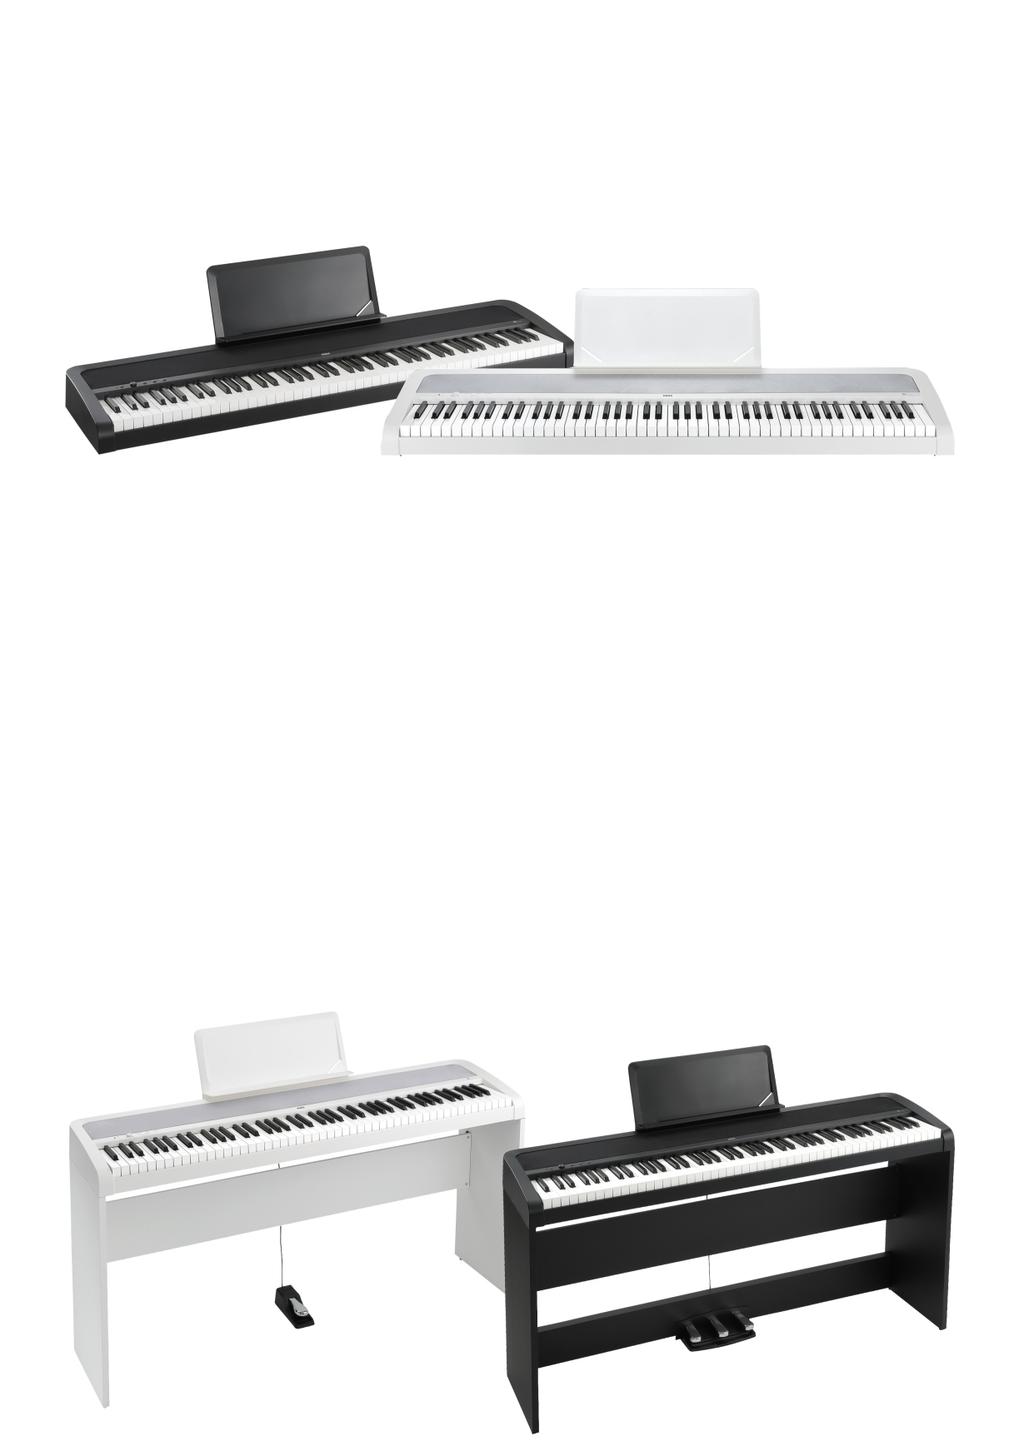 Perfekcyjne pianino, które Cię zaskoczy Kompaktowy i przystępny cenowo KORG B1 to idealne rozwiązanie, gdy potrzebujesz pianina do domu, do muzykowania i poważnych ćwiczeń.